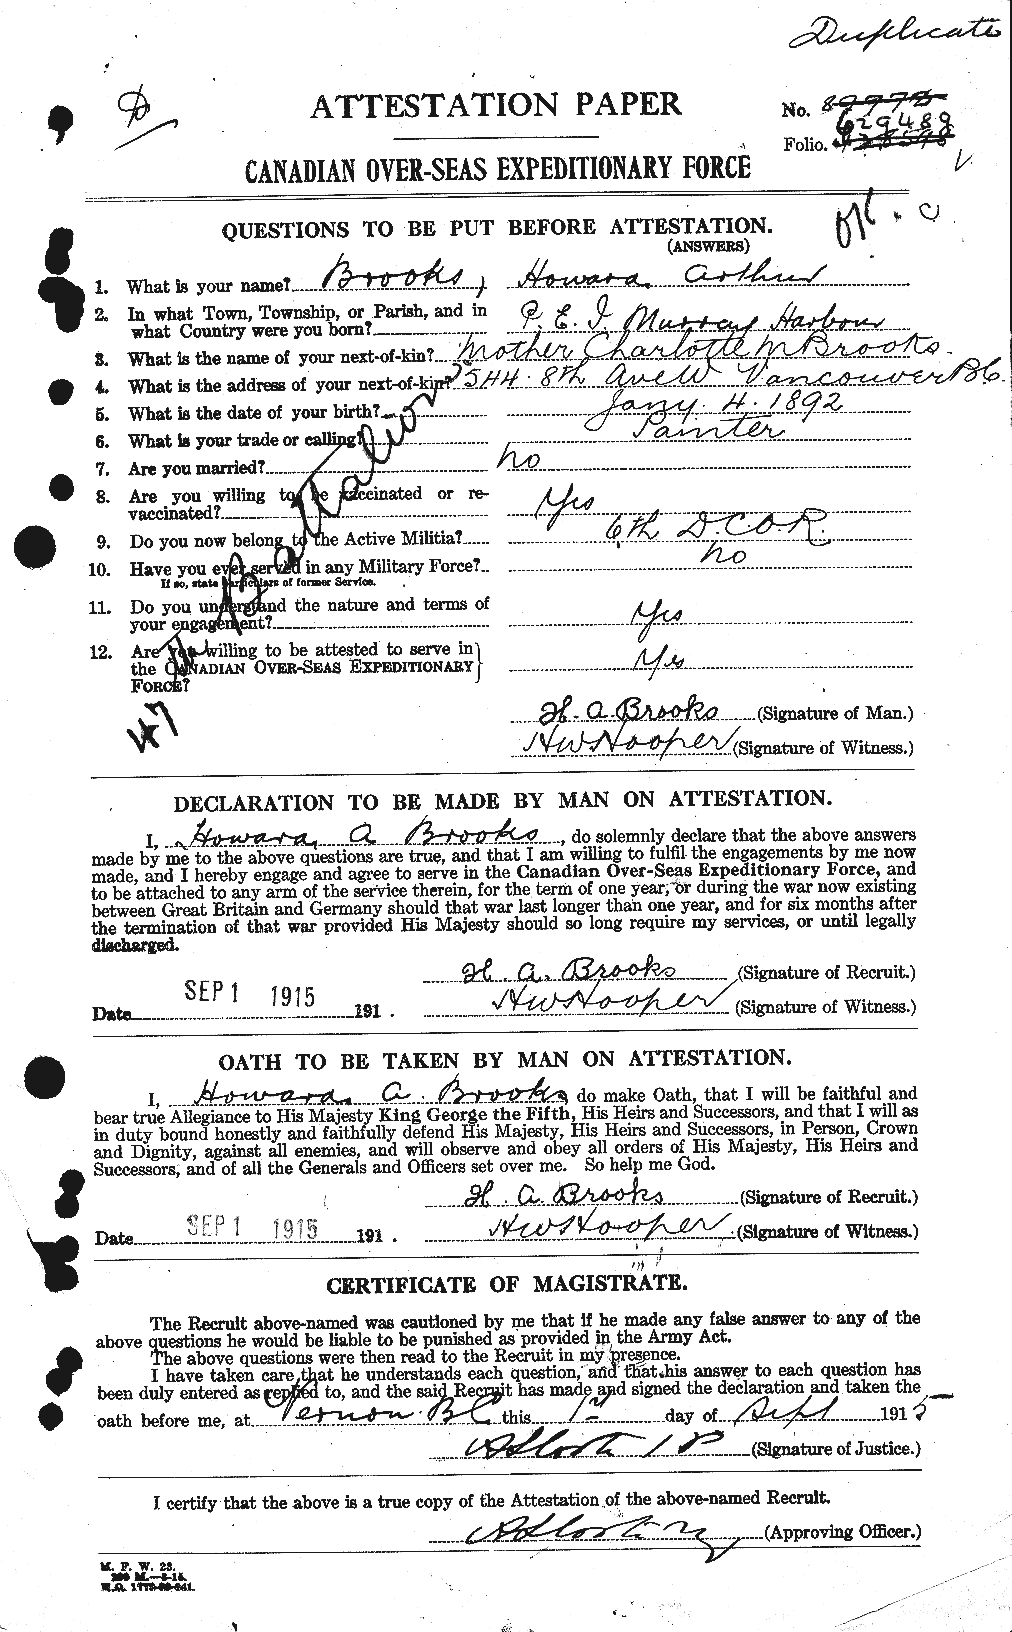 Dossiers du Personnel de la Première Guerre mondiale - CEC 261716a